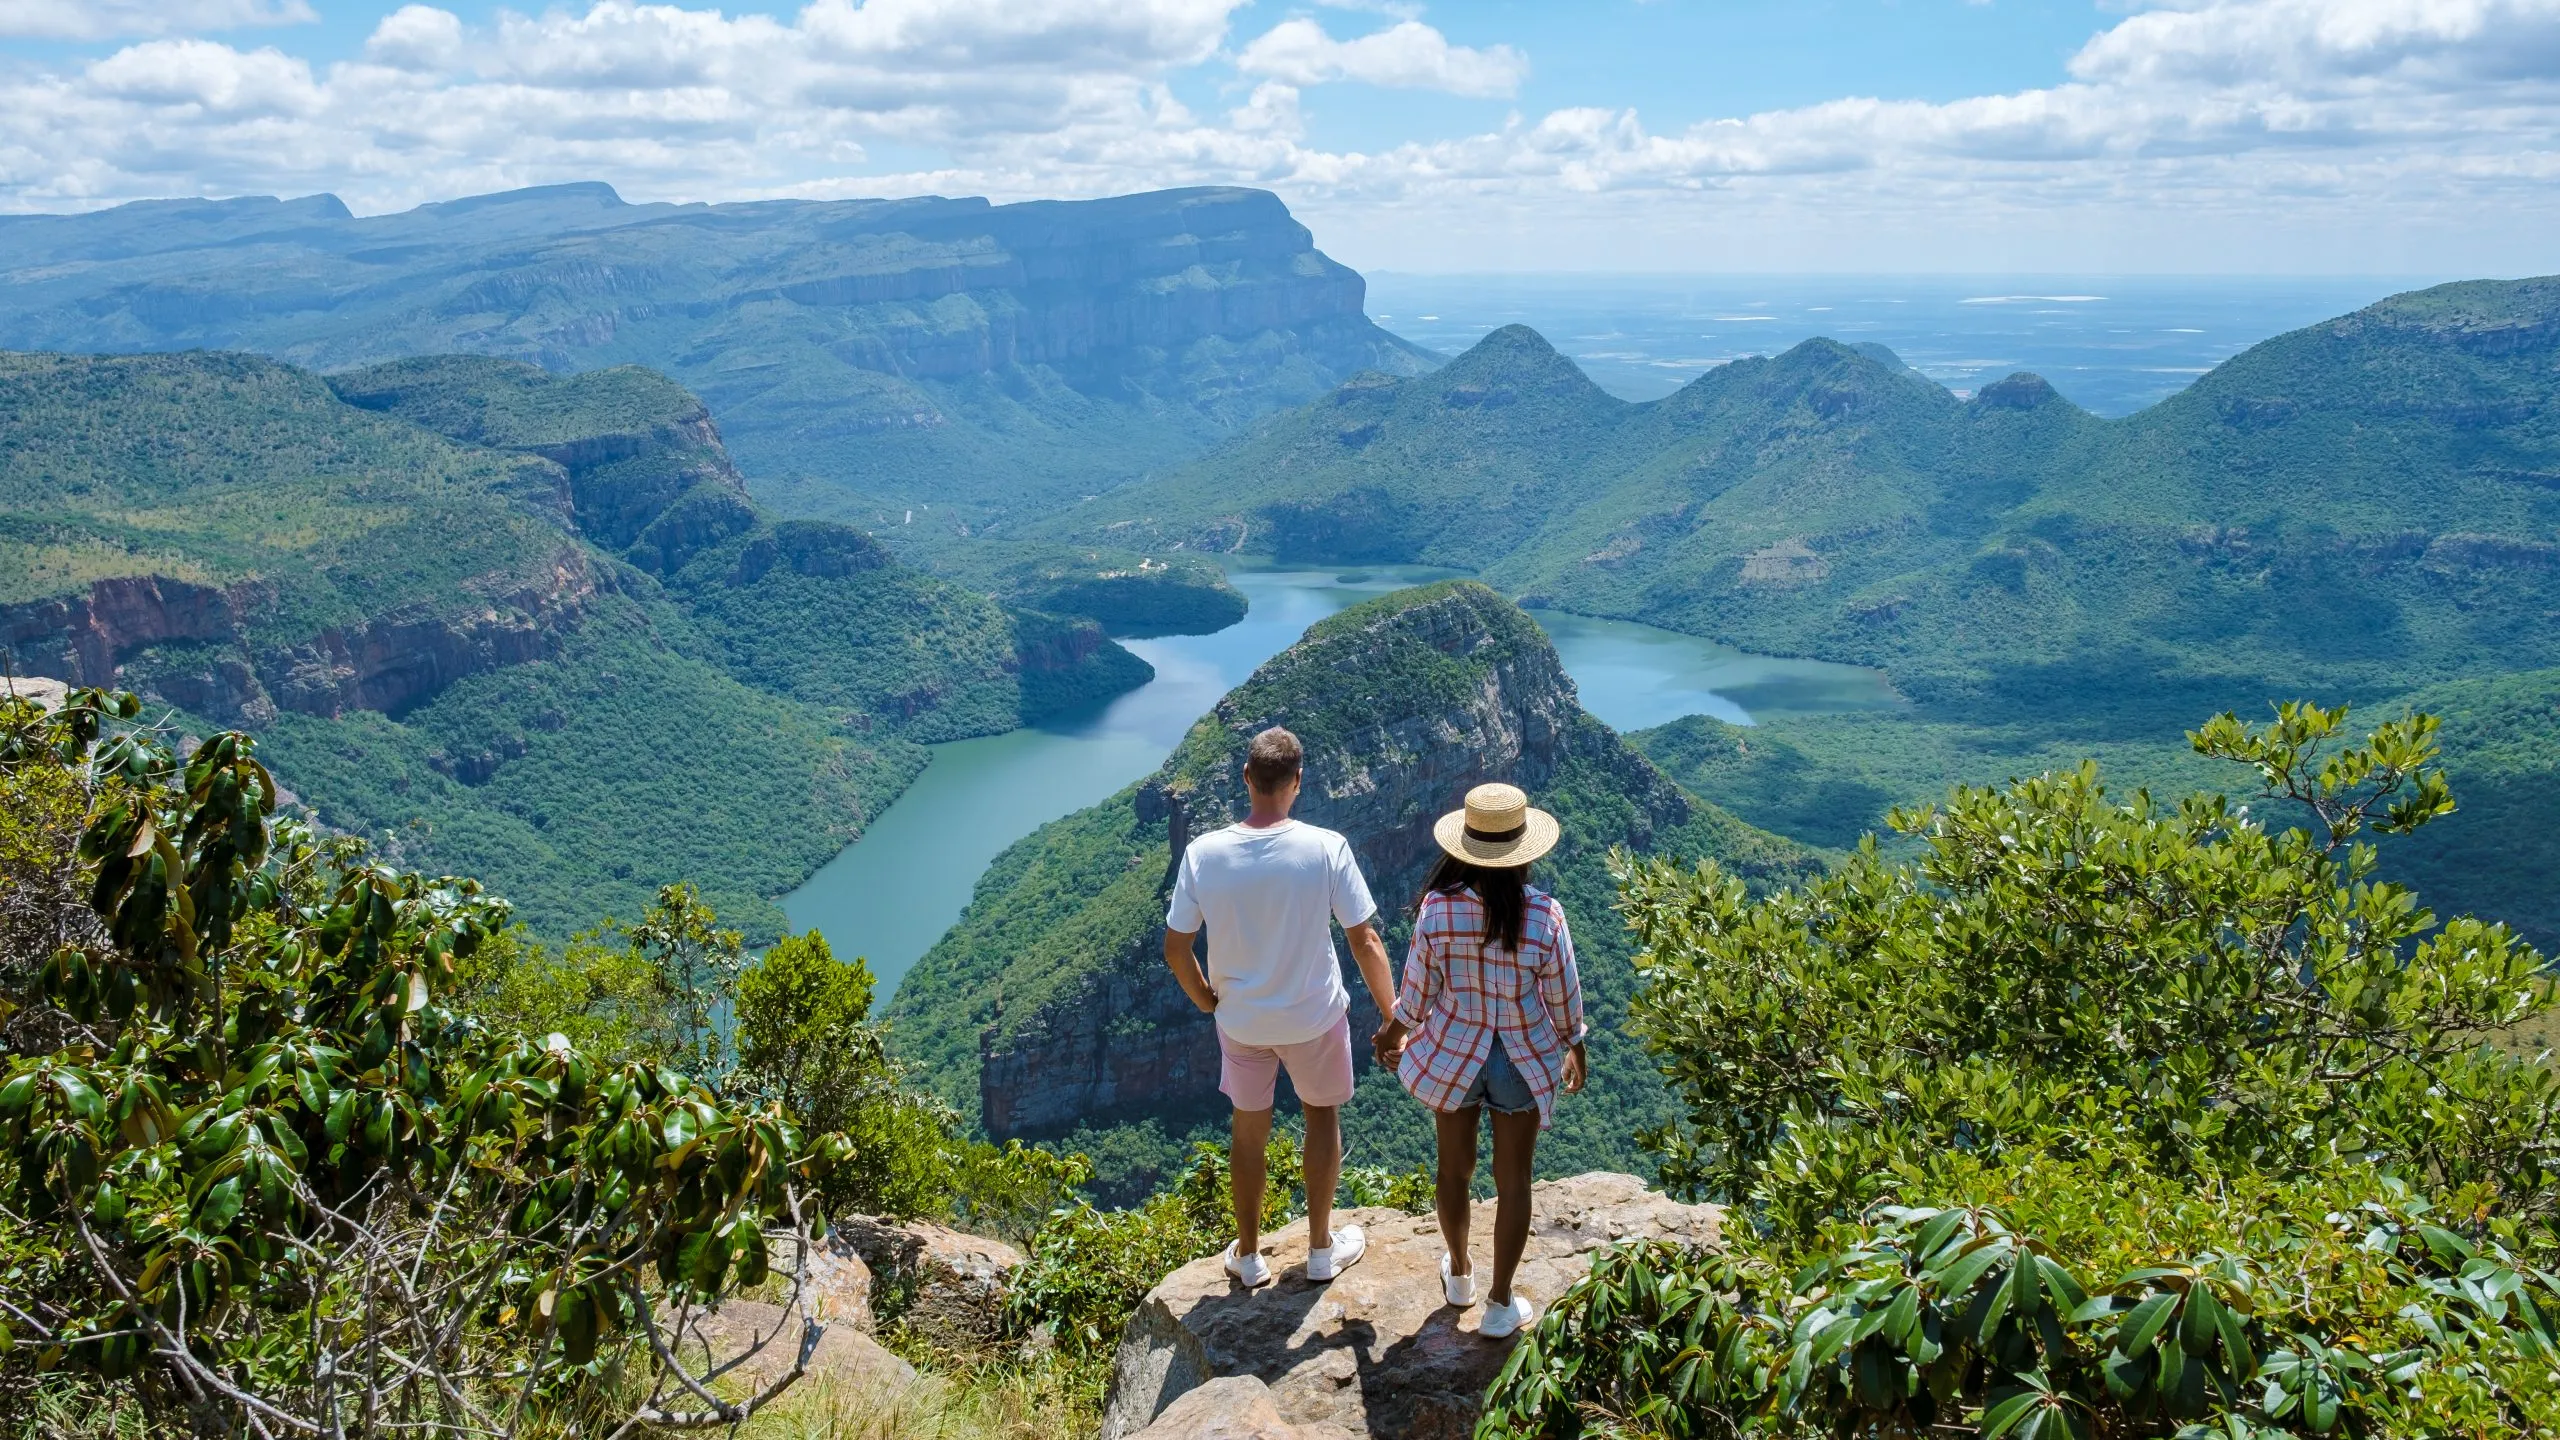 Panorama Route South Africa, Blyde river canyon med de tre rondavels, utsikt over tre rondavels og Blyde river canyon i Sør-Afrika. Asiatiske kvinner og kaukasiske menn på ferie i Sør-Afrika.